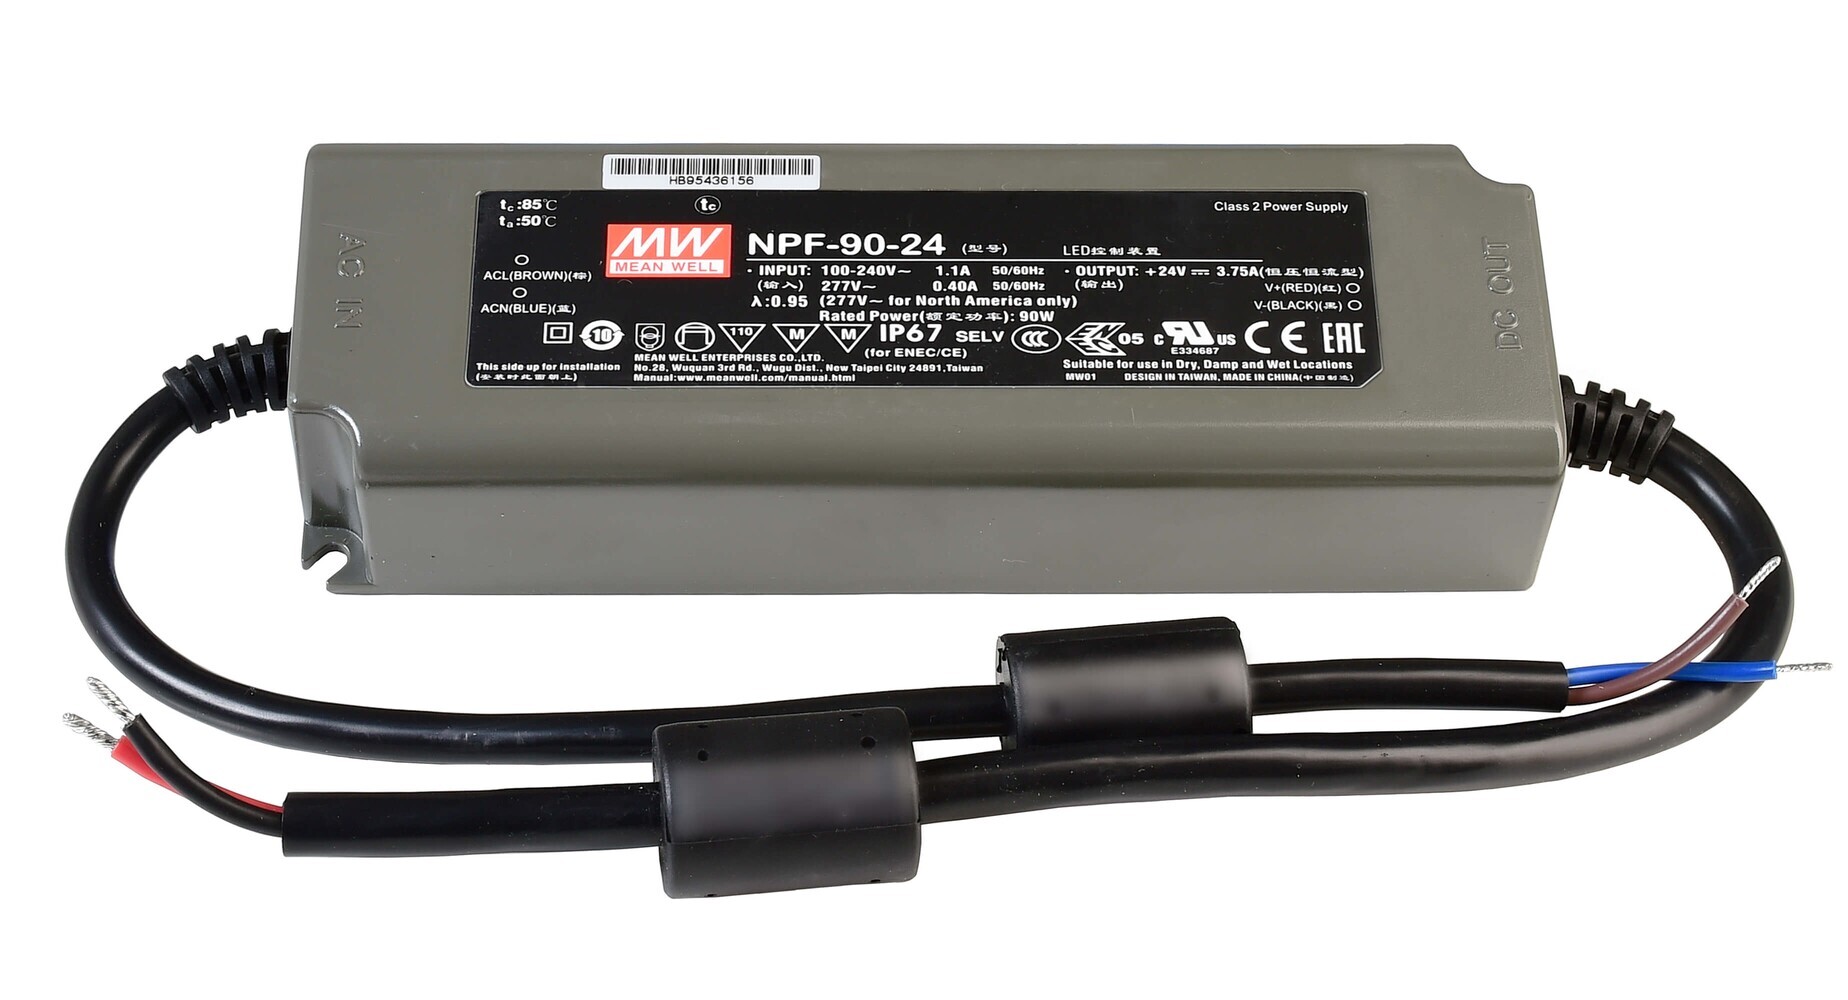 Hochwertiges LED Netzteil von MEANWELL, konstante Spannung, optimal für 404V DC, 3750 mA